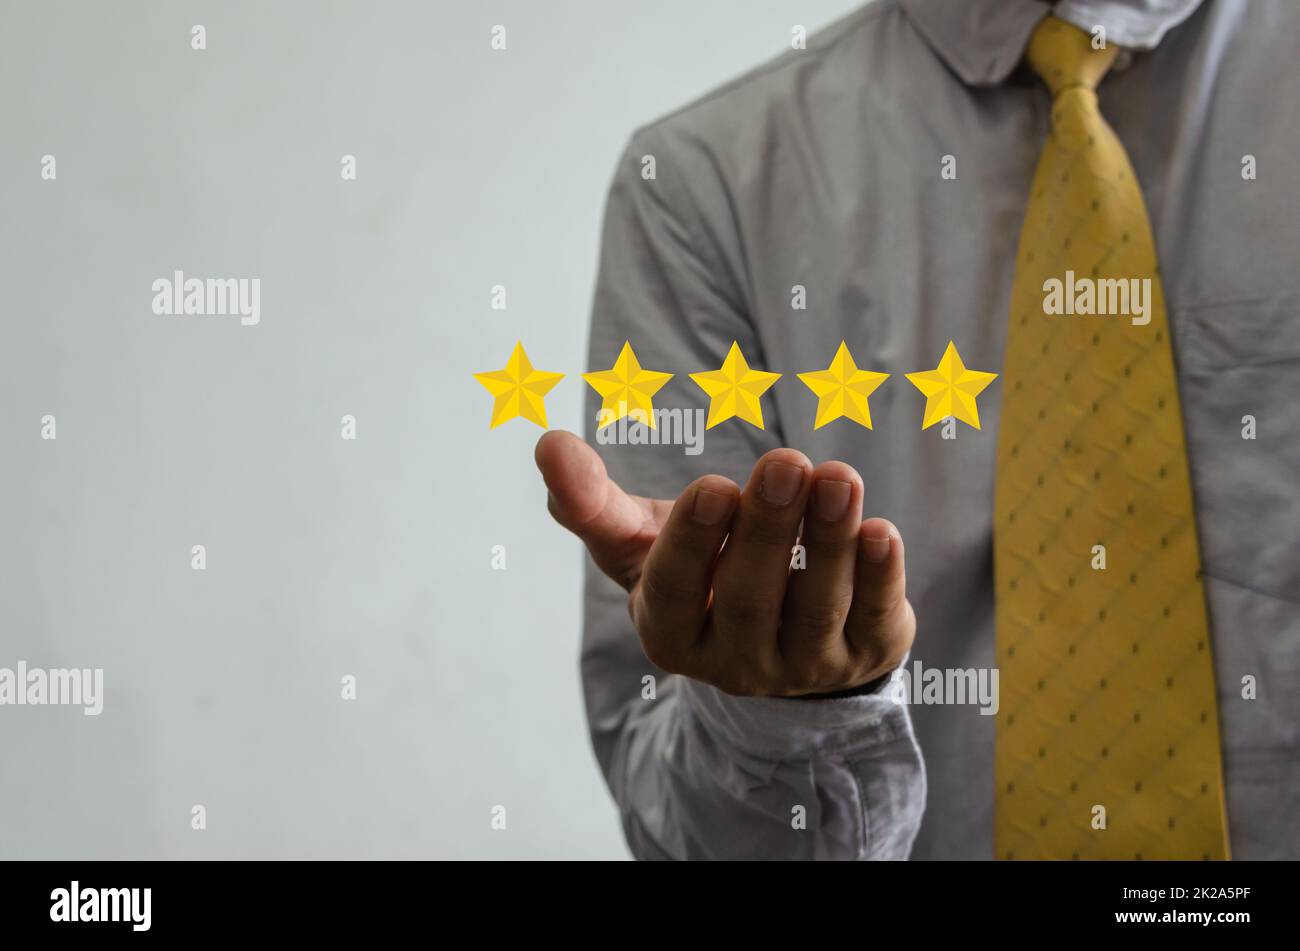 Concetto di cliente Servizio eccellente per la soddisfazione cinque stelle con touch screen uomo d'affari. Informazioni sul feedback e recensioni positive dei clienti. Foto Stock